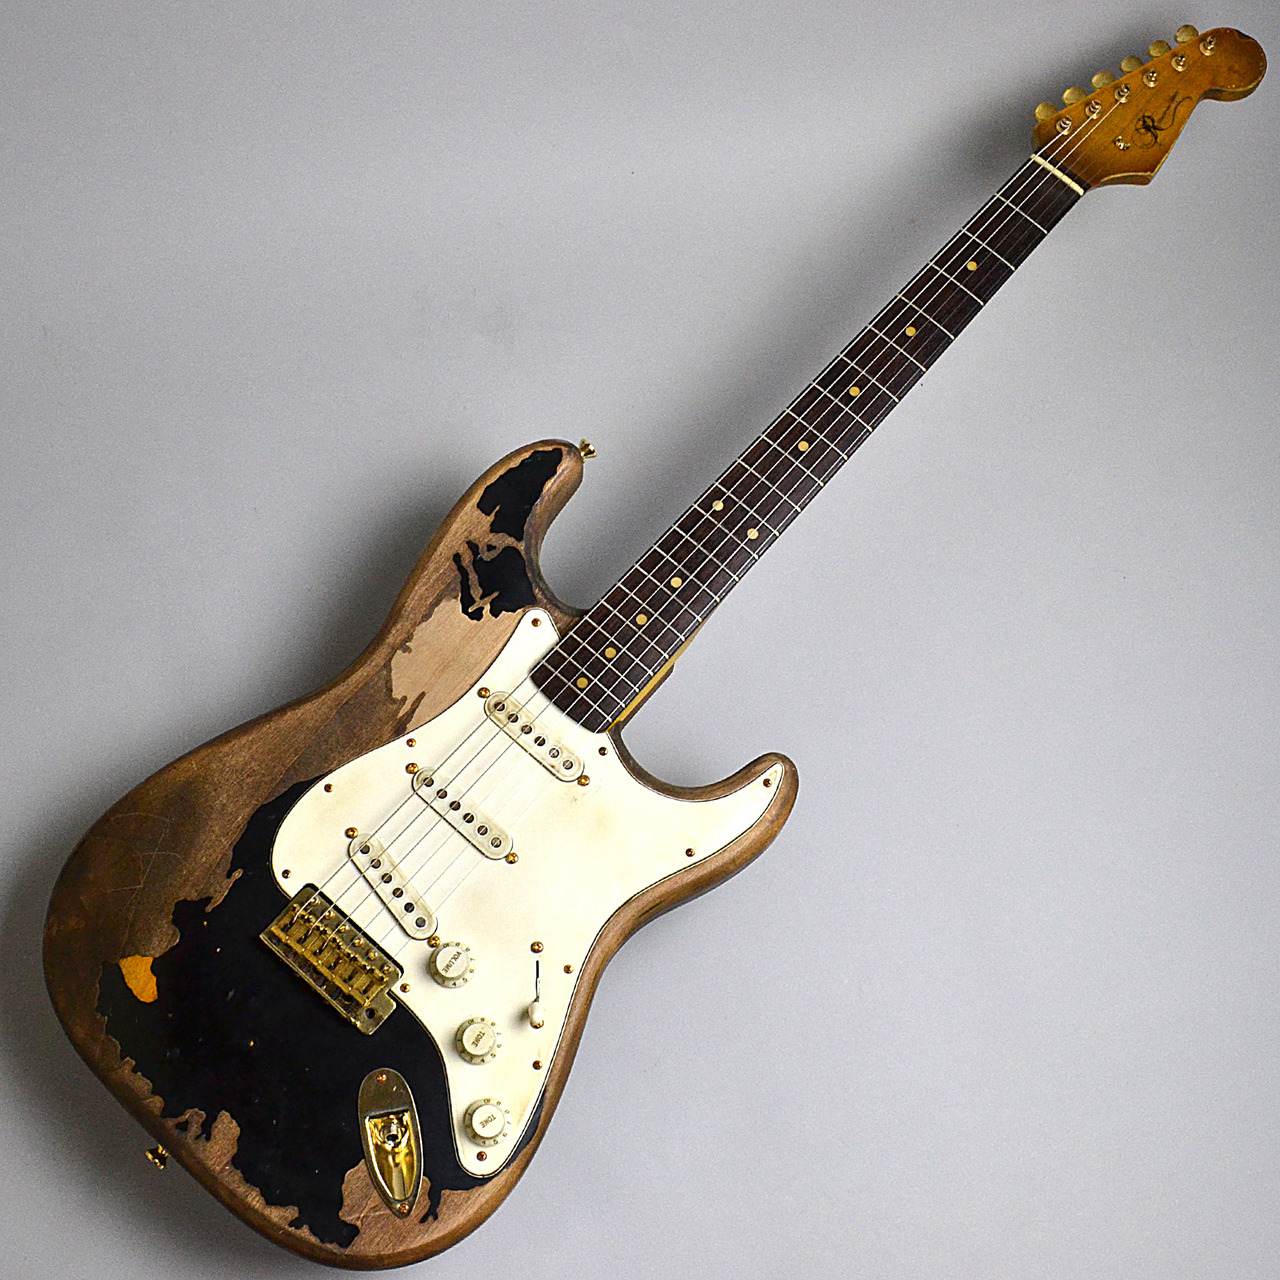 【Rittenhouse Guitars】John MayerのBlack Oneをモチーフに製作されたS-model